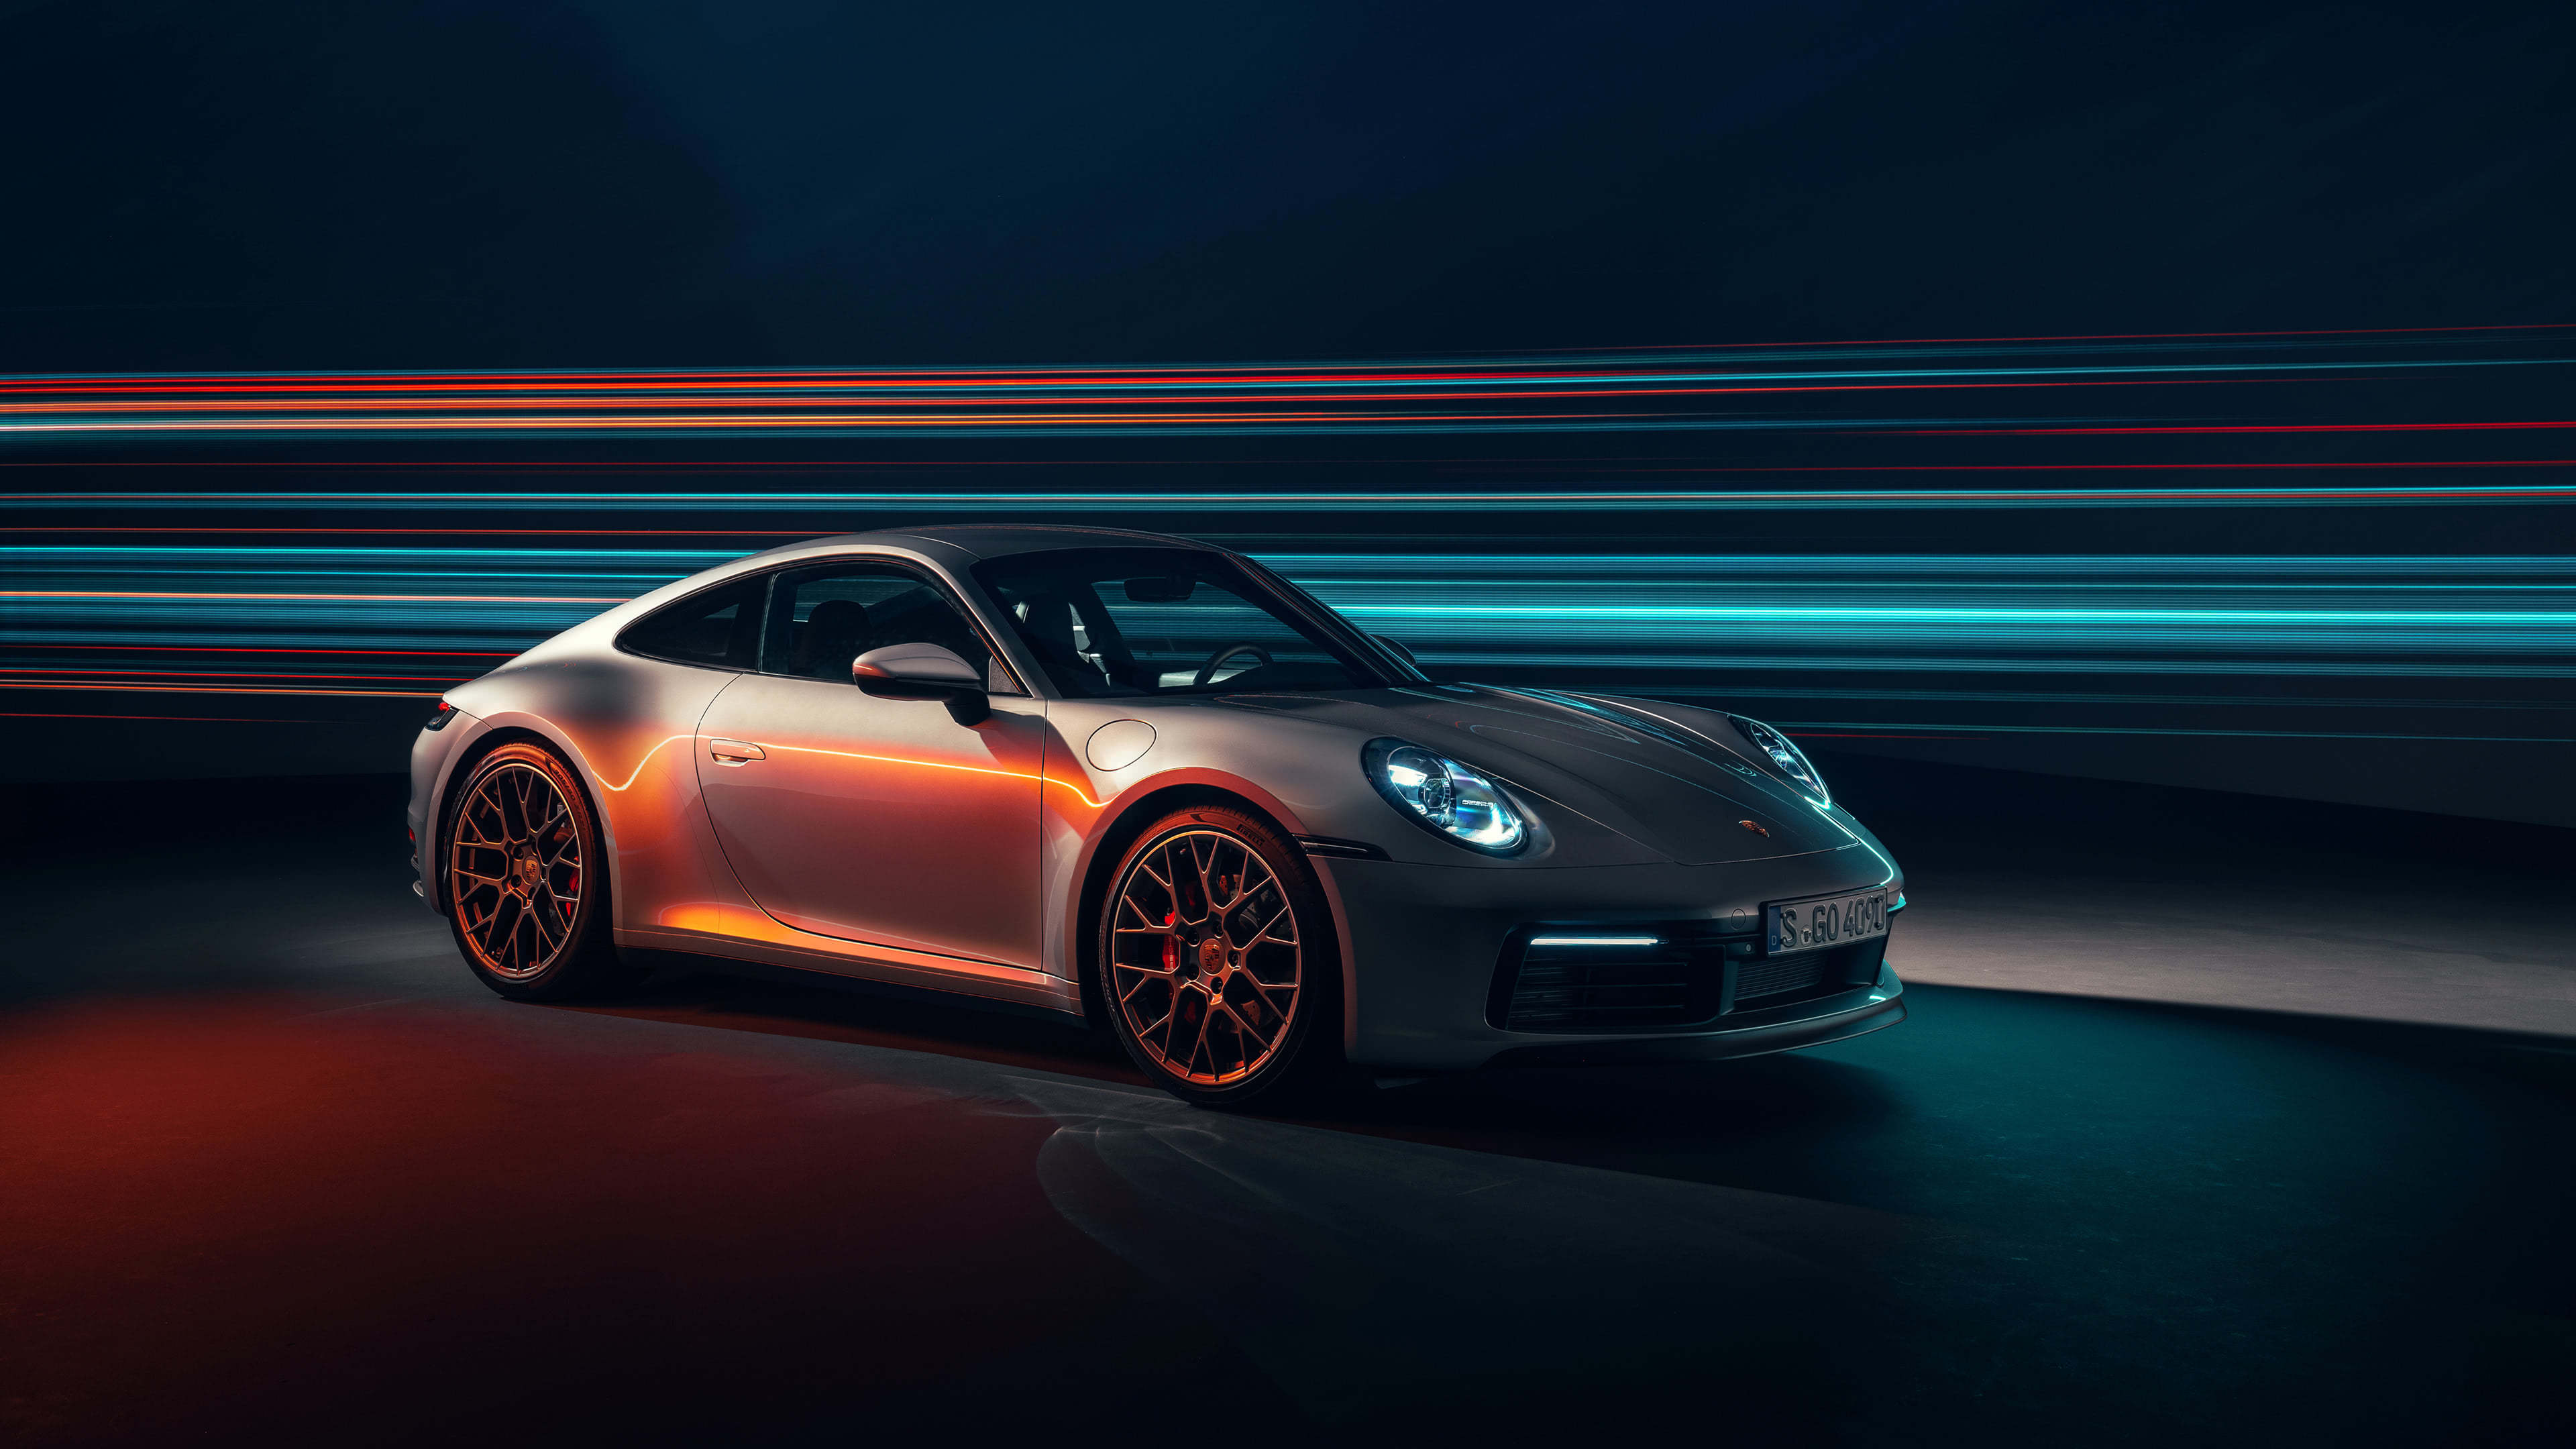 Bạn đang tìm kiếm hình nền đỉnh cao cho màn hình của mình? Không nên bỏ qua hình nền Porsche 911 Carrera UHD 4K tuyệt đẹp này. Tải xuống miễn phí và chiêm ngưỡng những đường nét hoàn hảo của chiếc xe Porsche.